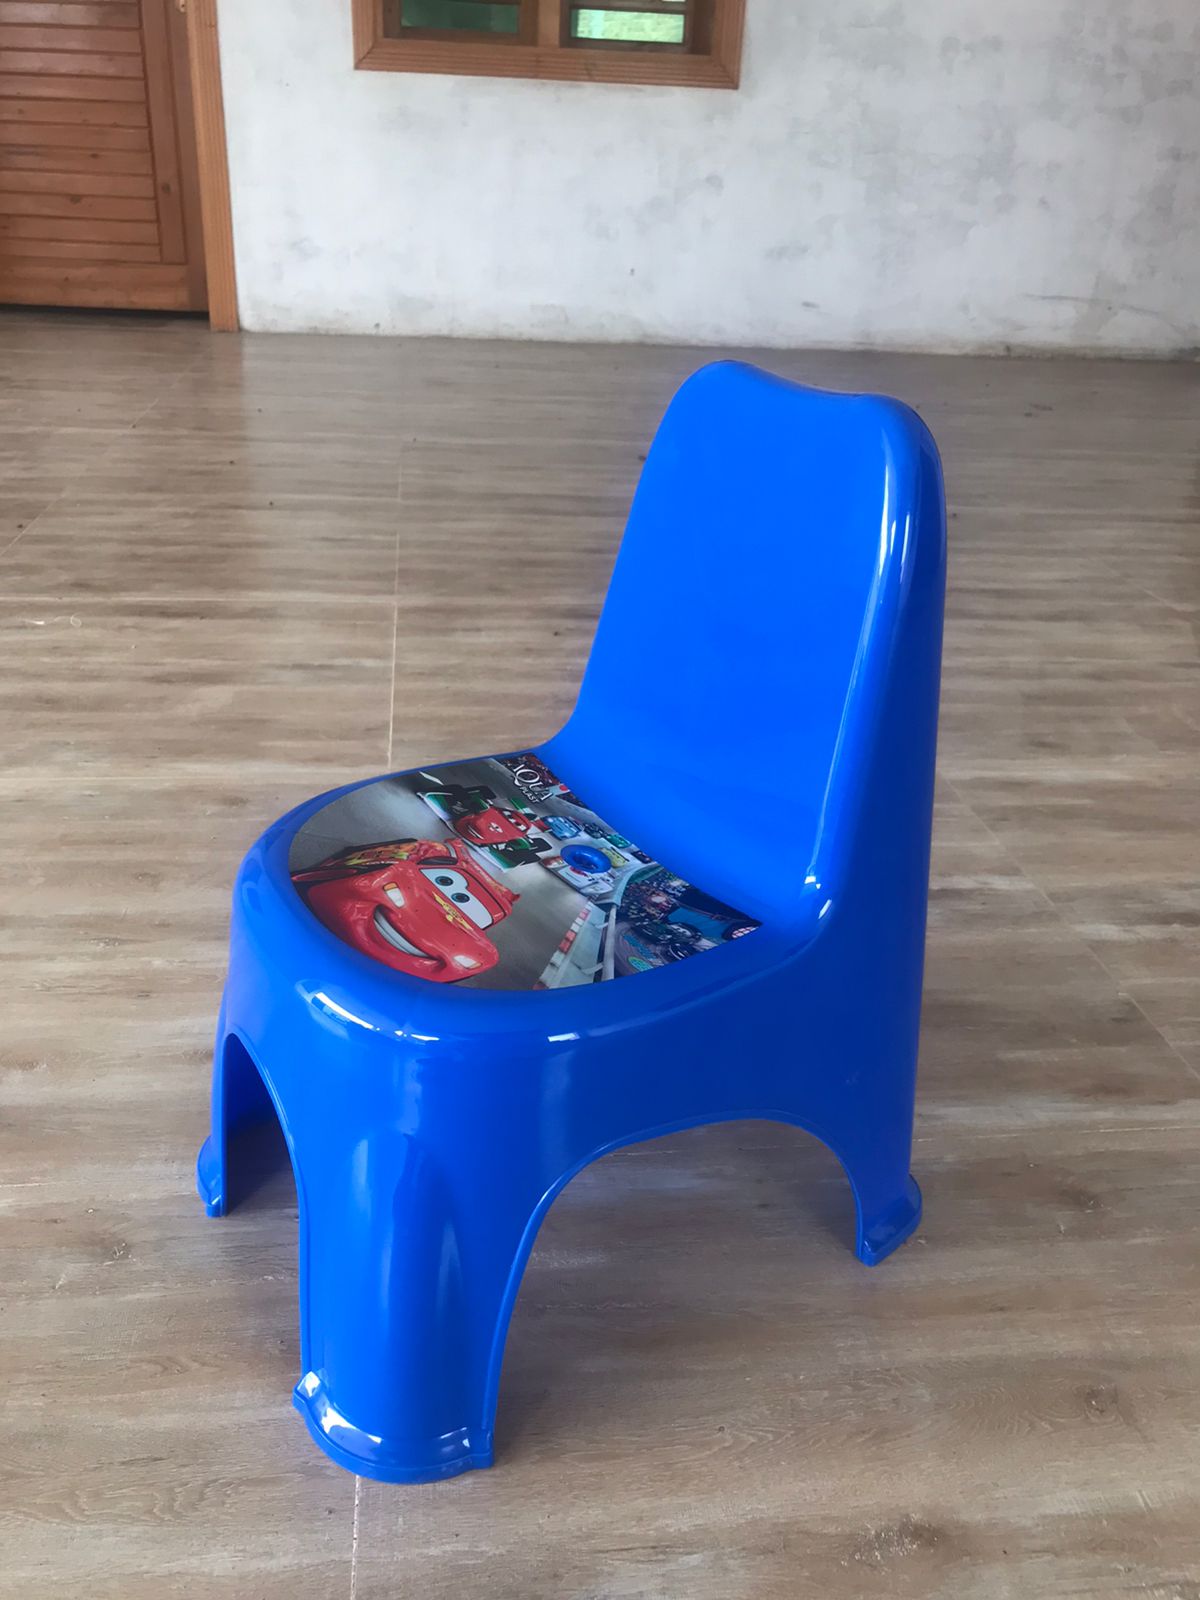 Plastic Chair For Kids -Plastic chair - Kids plastic  chair  - Baby Plastic chair